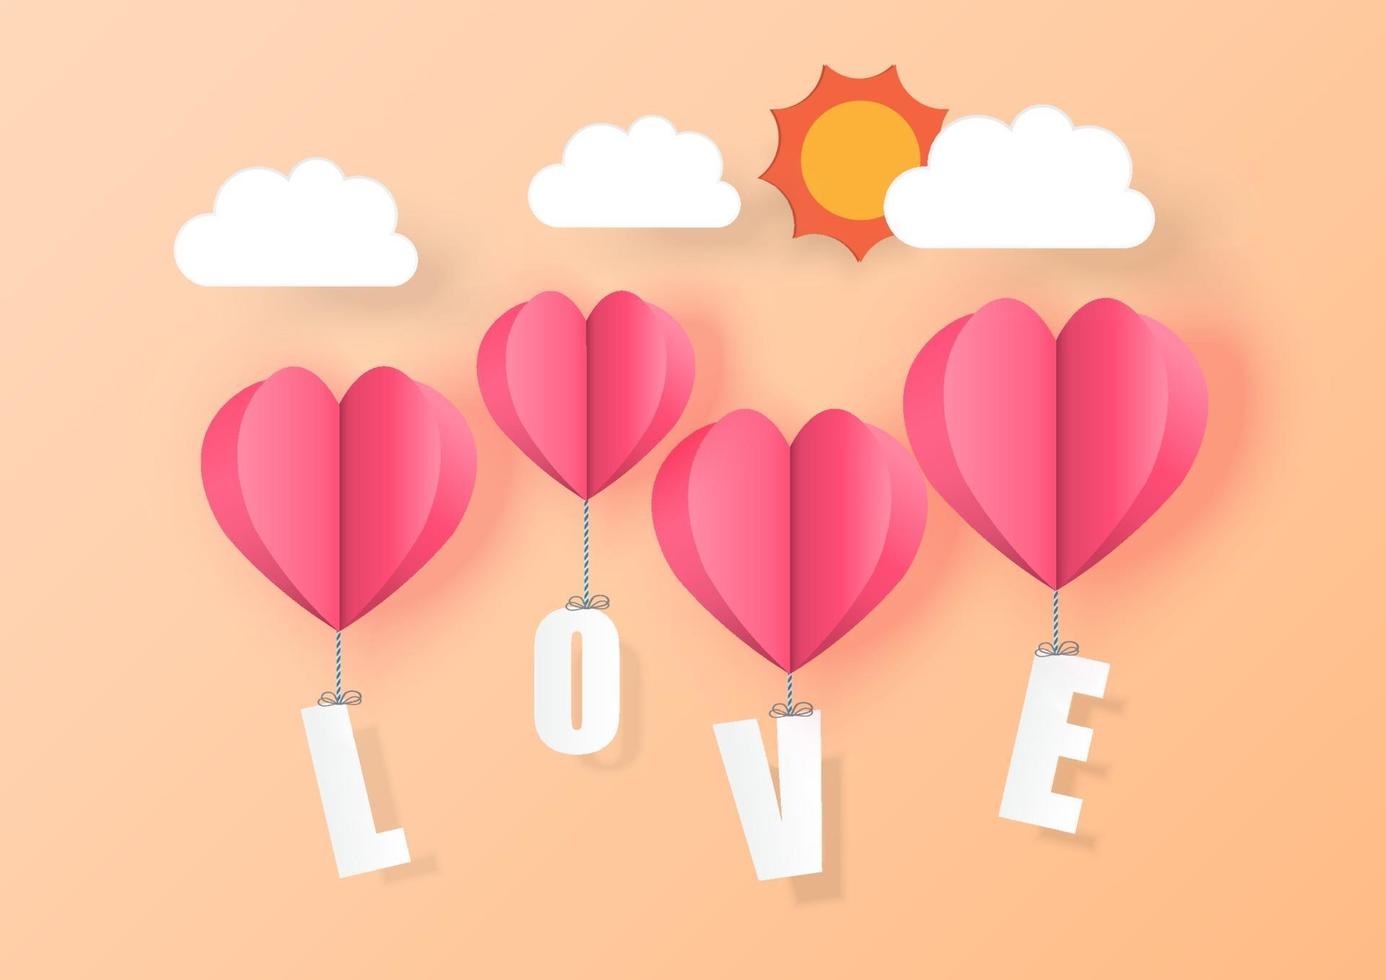 liefde voor Valentijnsdag. hart ballonnen op achtergrond. vector illustratie.